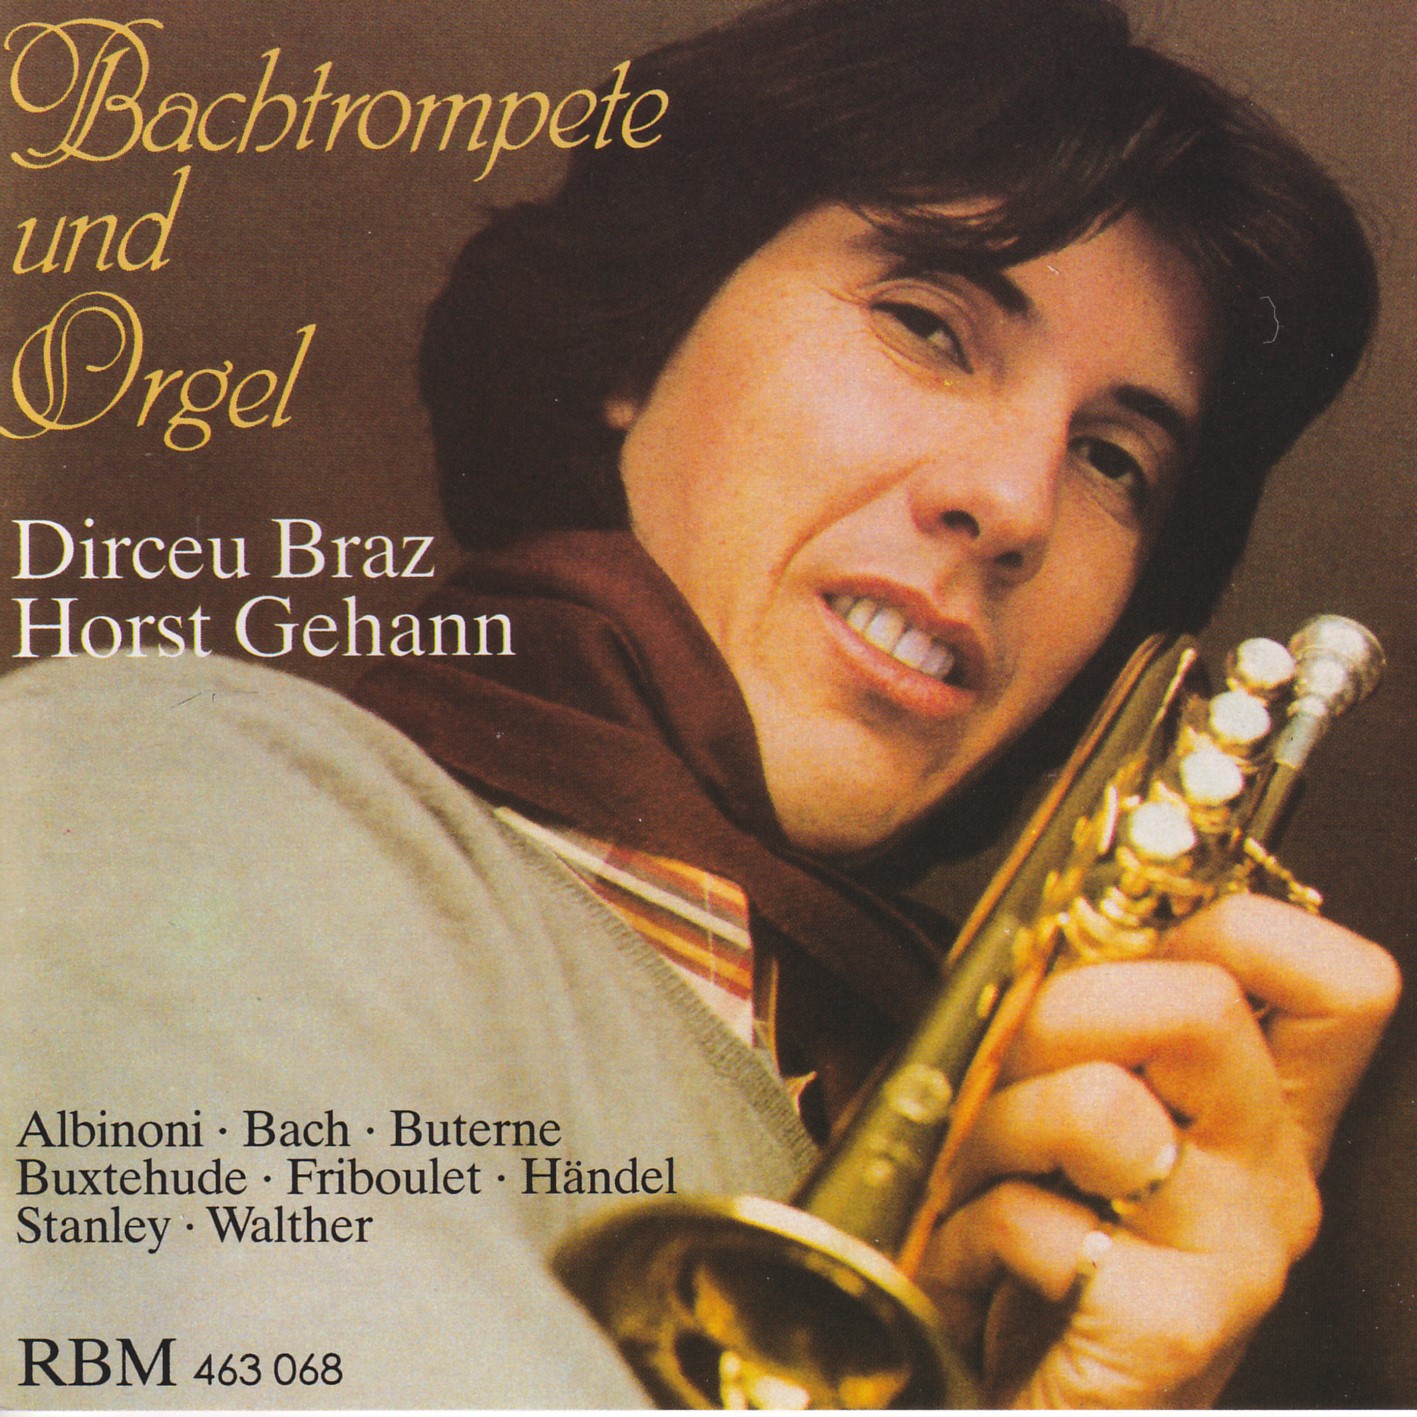 Bachtrompete und Orgel II - Dirceu Braz